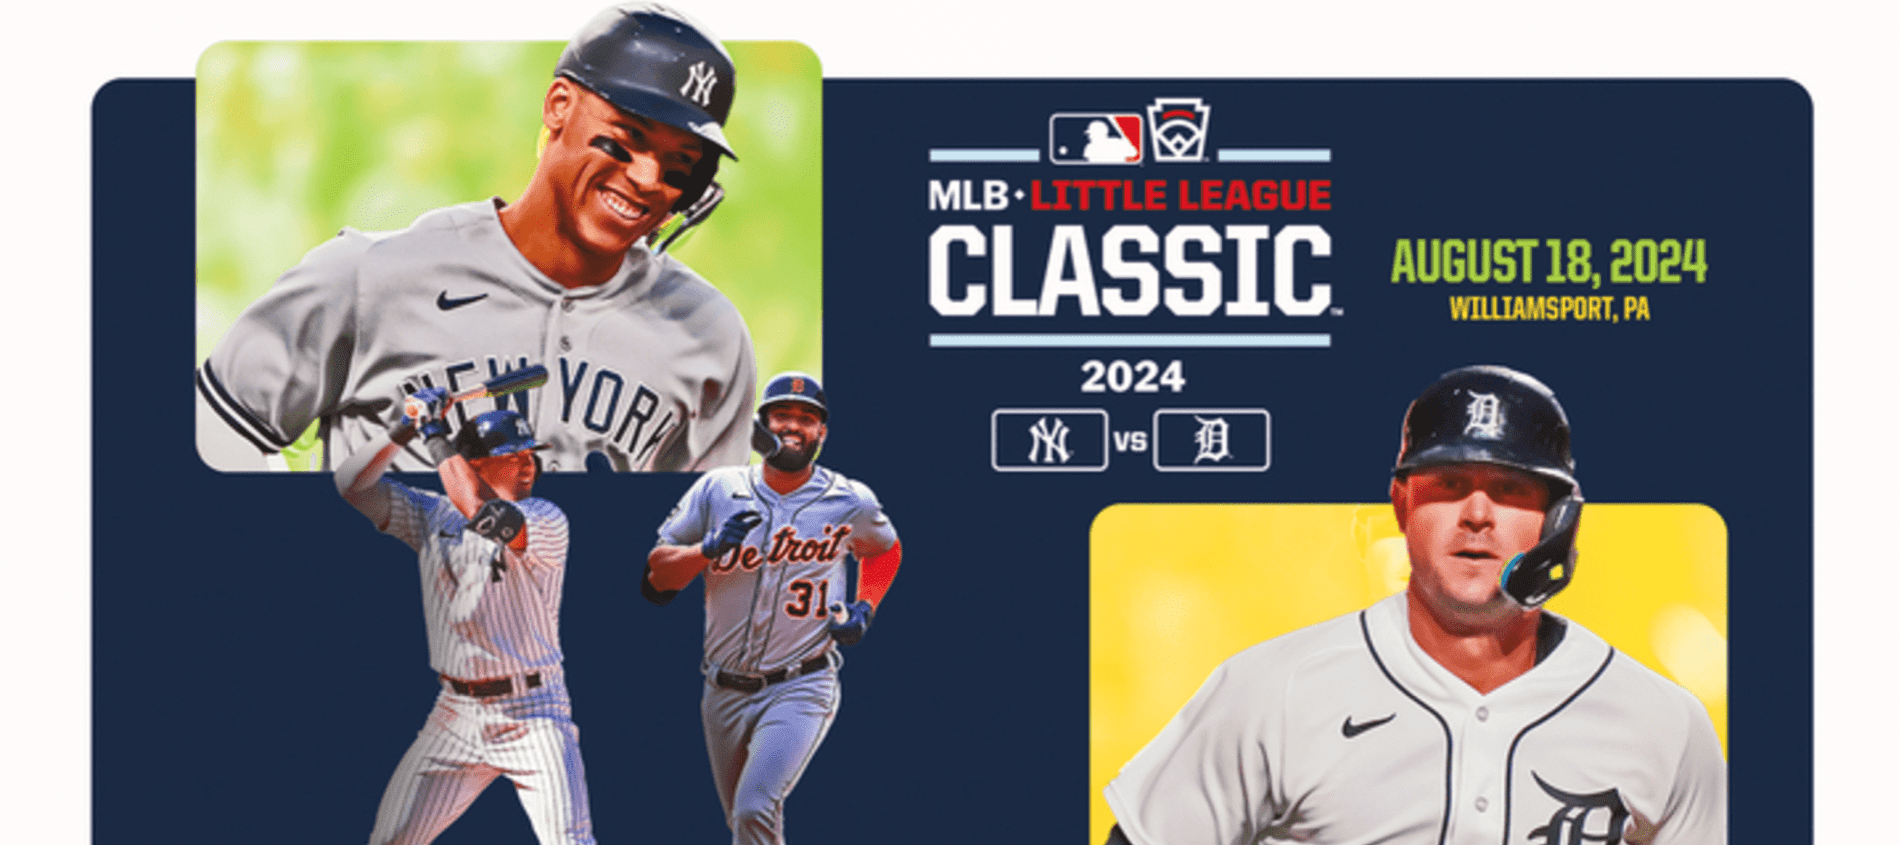 Little League Classic: Cubs 7, Pirates 1